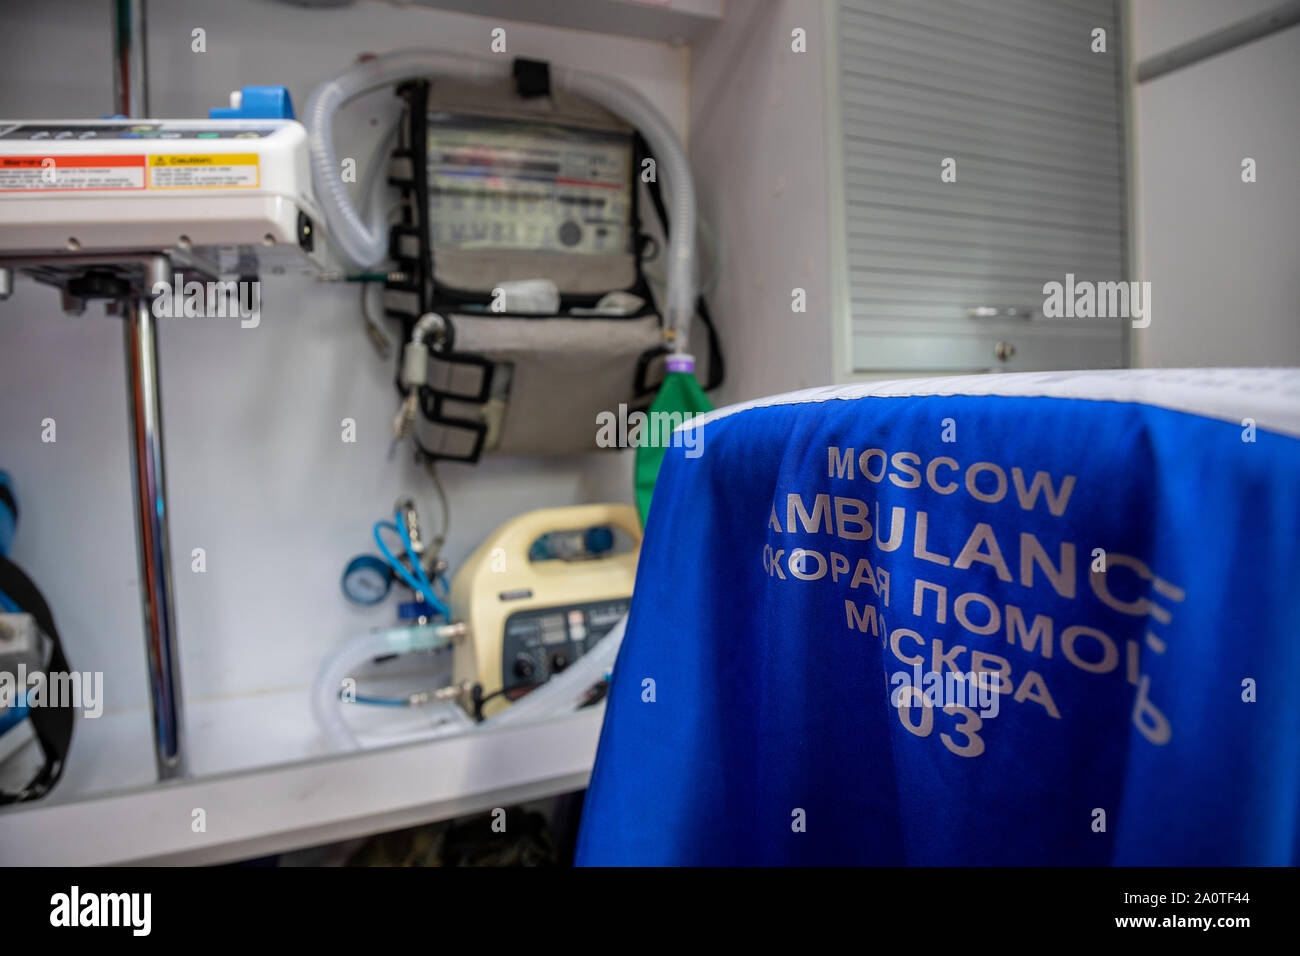 Luogo di lavoro del personale medico ambulanza di una ambulanza del servizio di emergenza nella città di Mosca, Russia Foto Stock